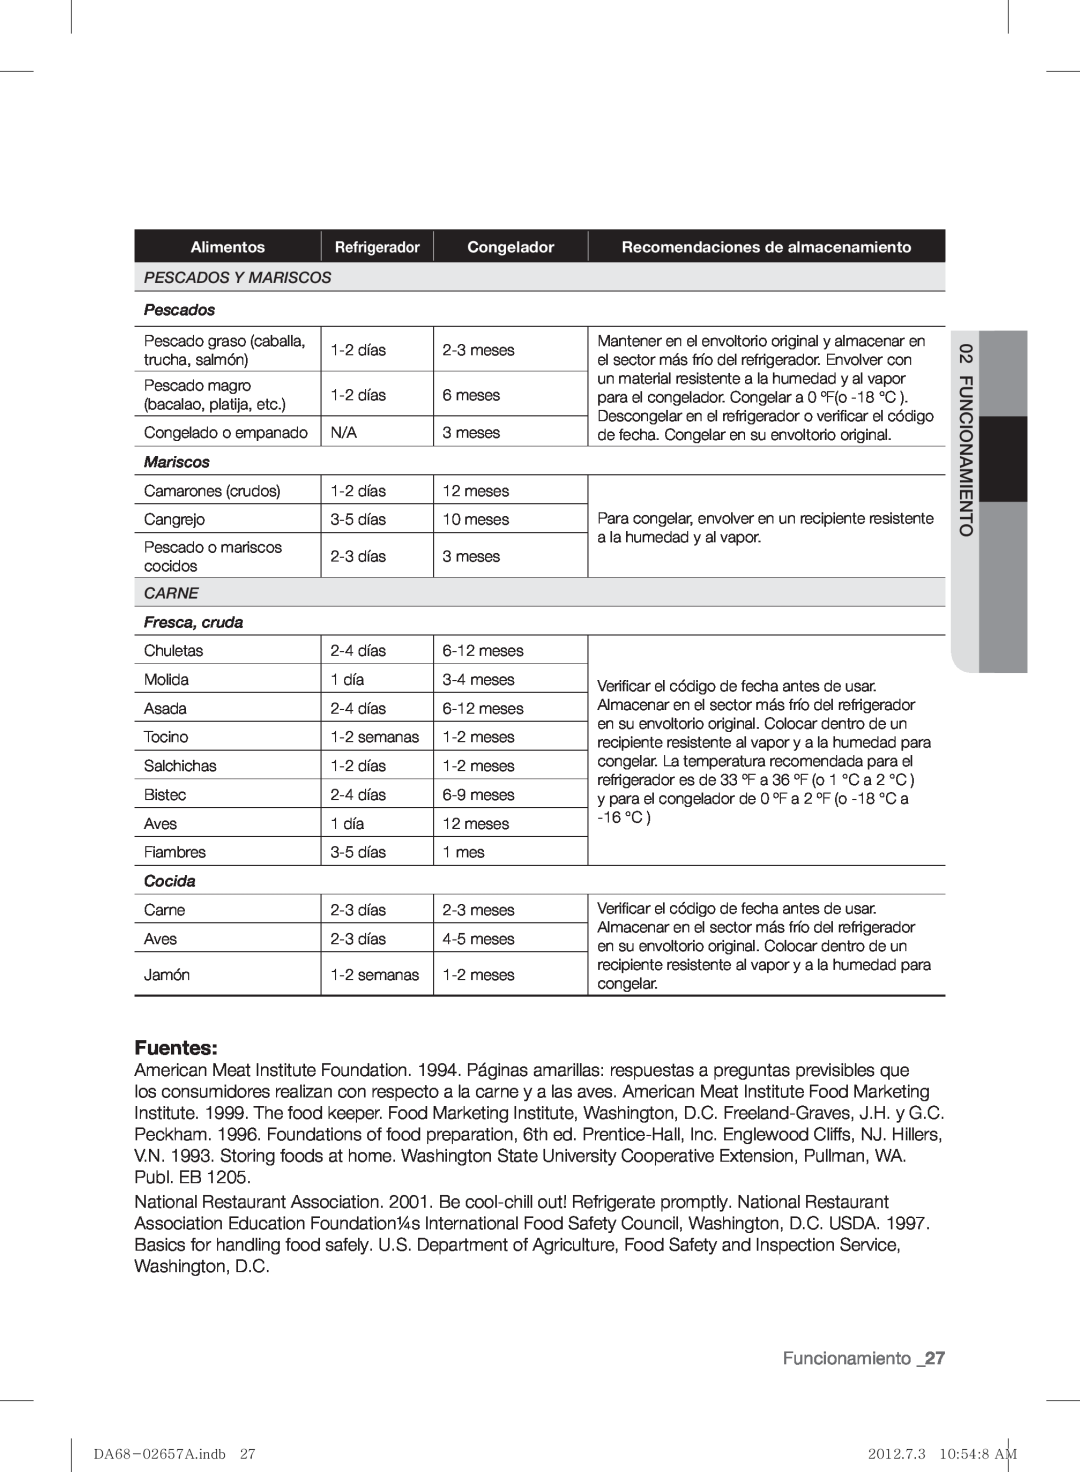 Samsung RF221NCTABC user manual Fuentes, Funcionamiento 